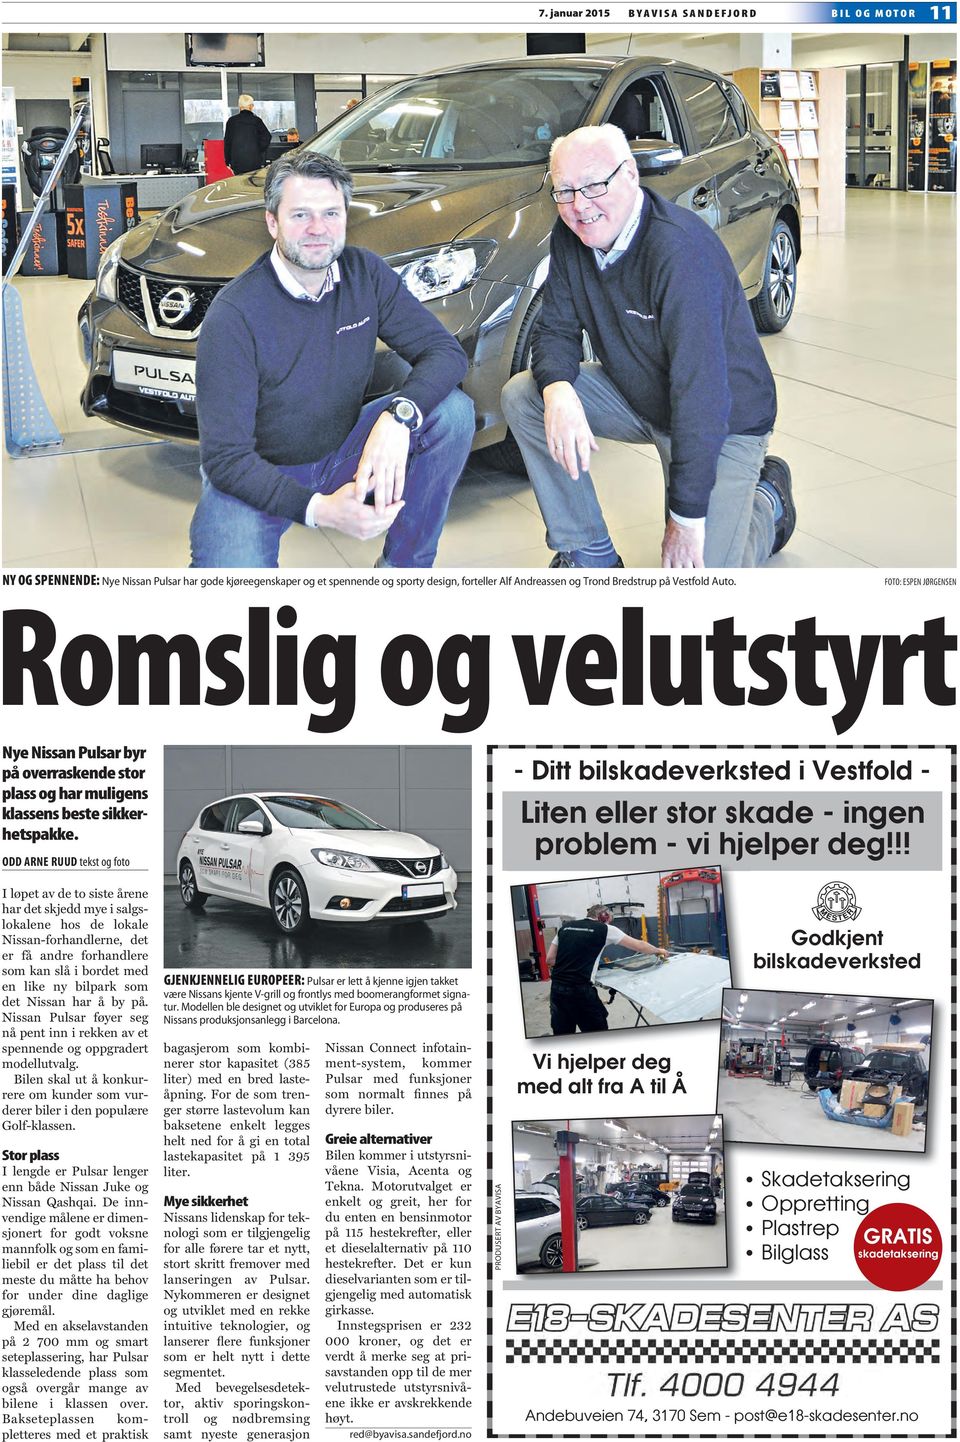 ODD ARNE RUUD tekst og foto - Ditt bilskadeverksted i Vestfold - Liten eller stor skade - ingen problem - vi hjelper deg!